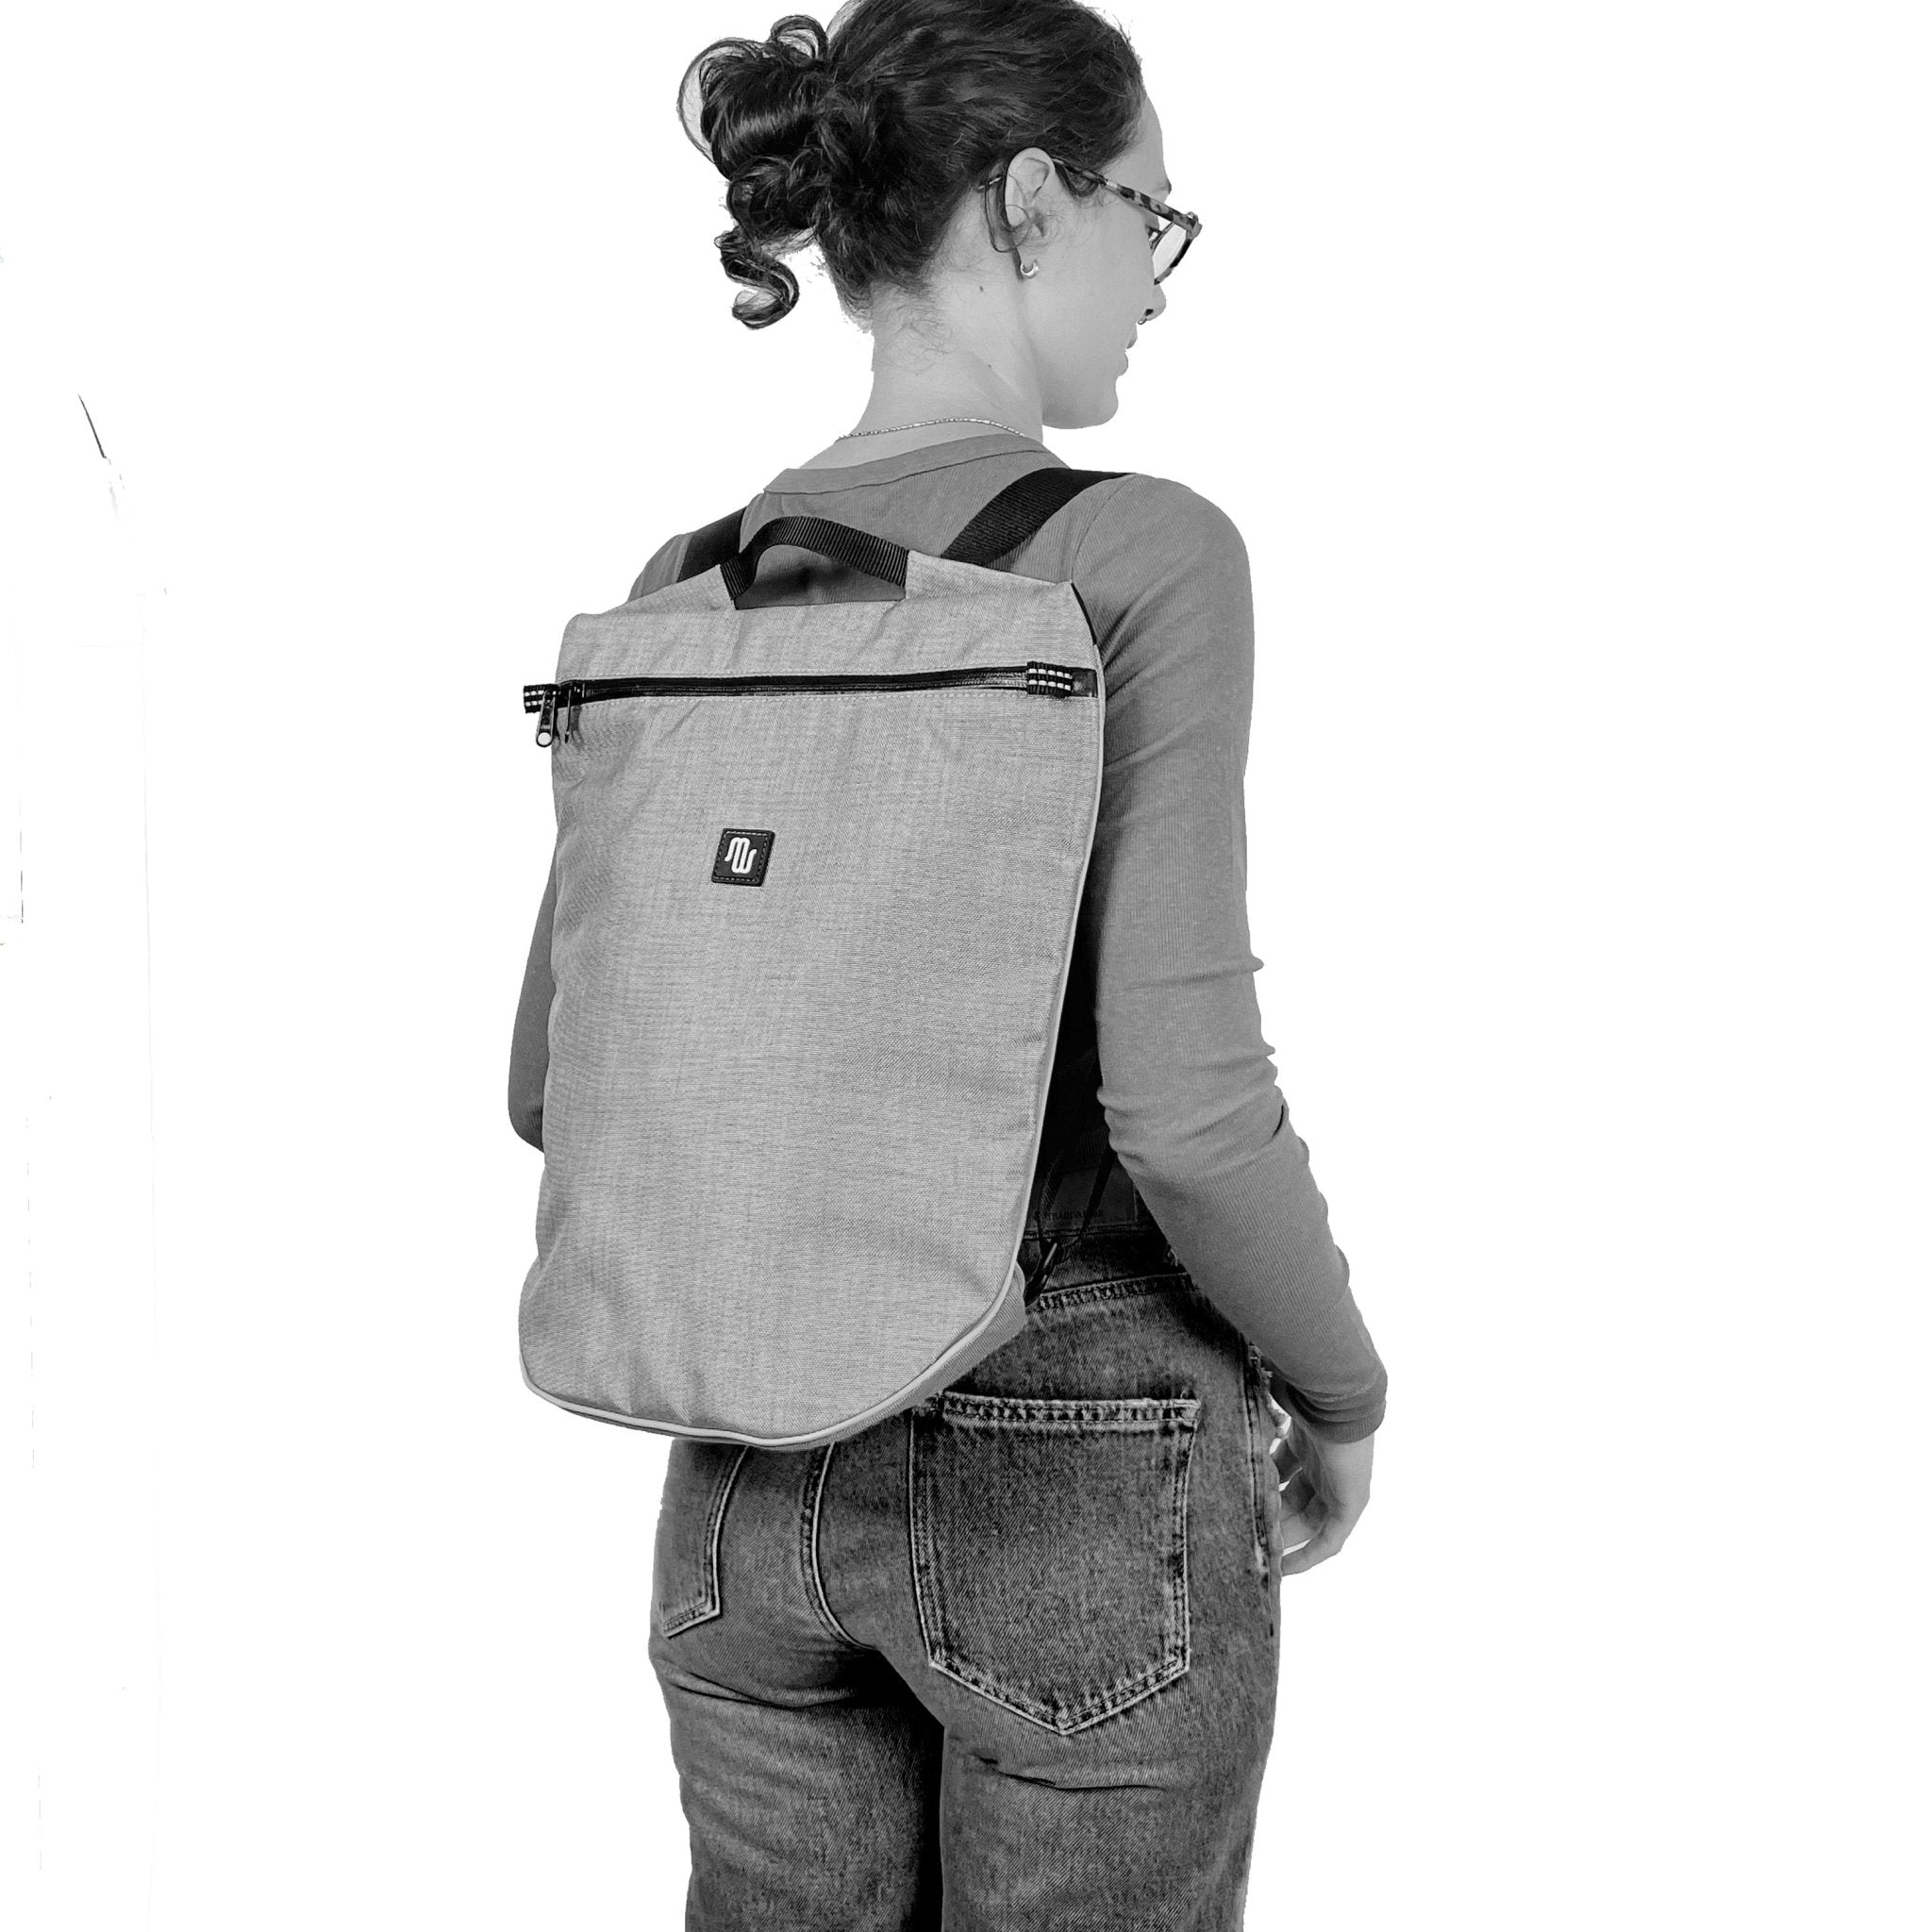 Backpack - BETA No. 005 - Backpacks - medencebag